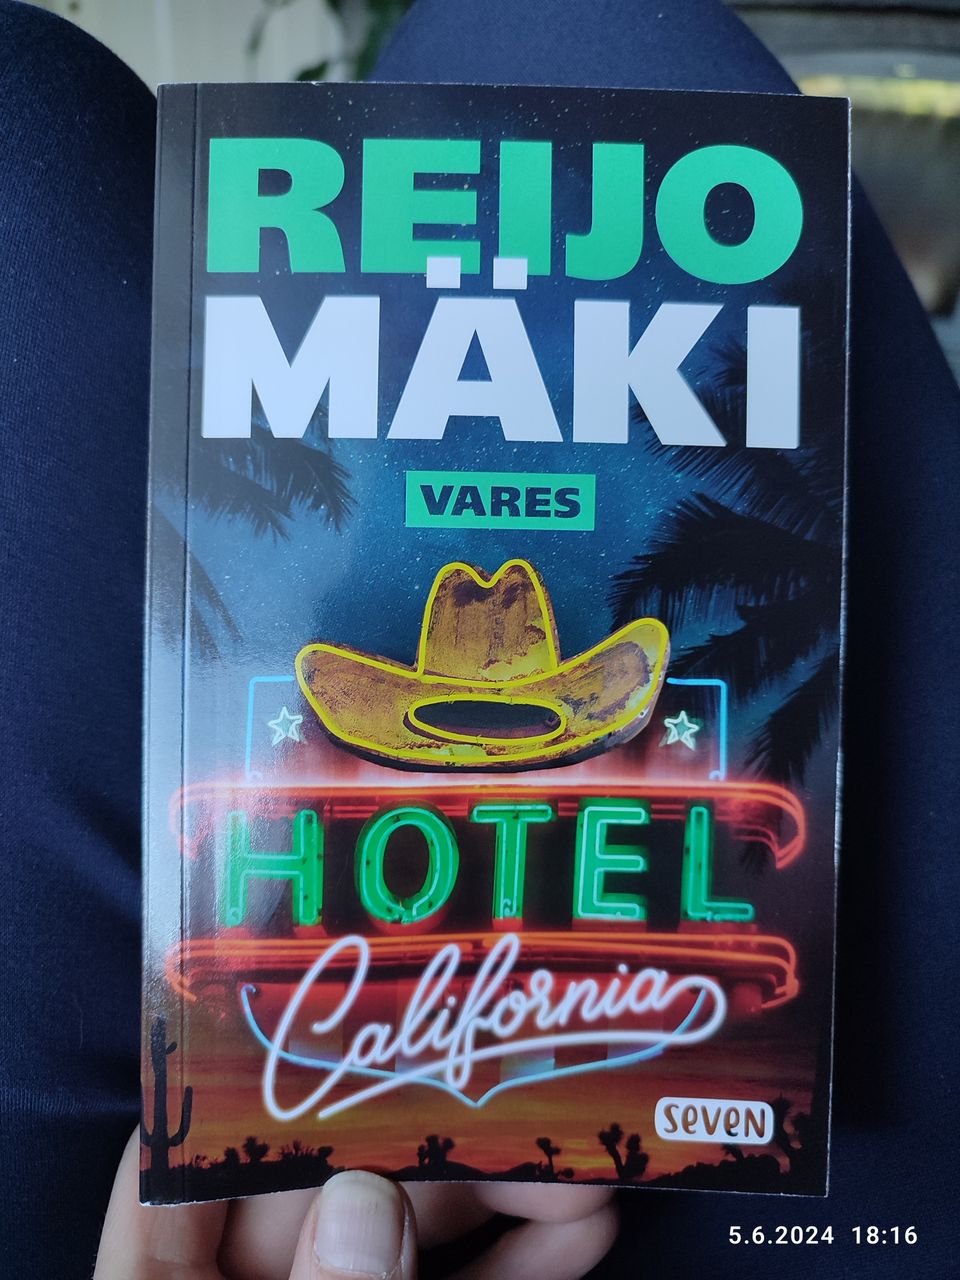 Reijo Mäki Vares hotel California